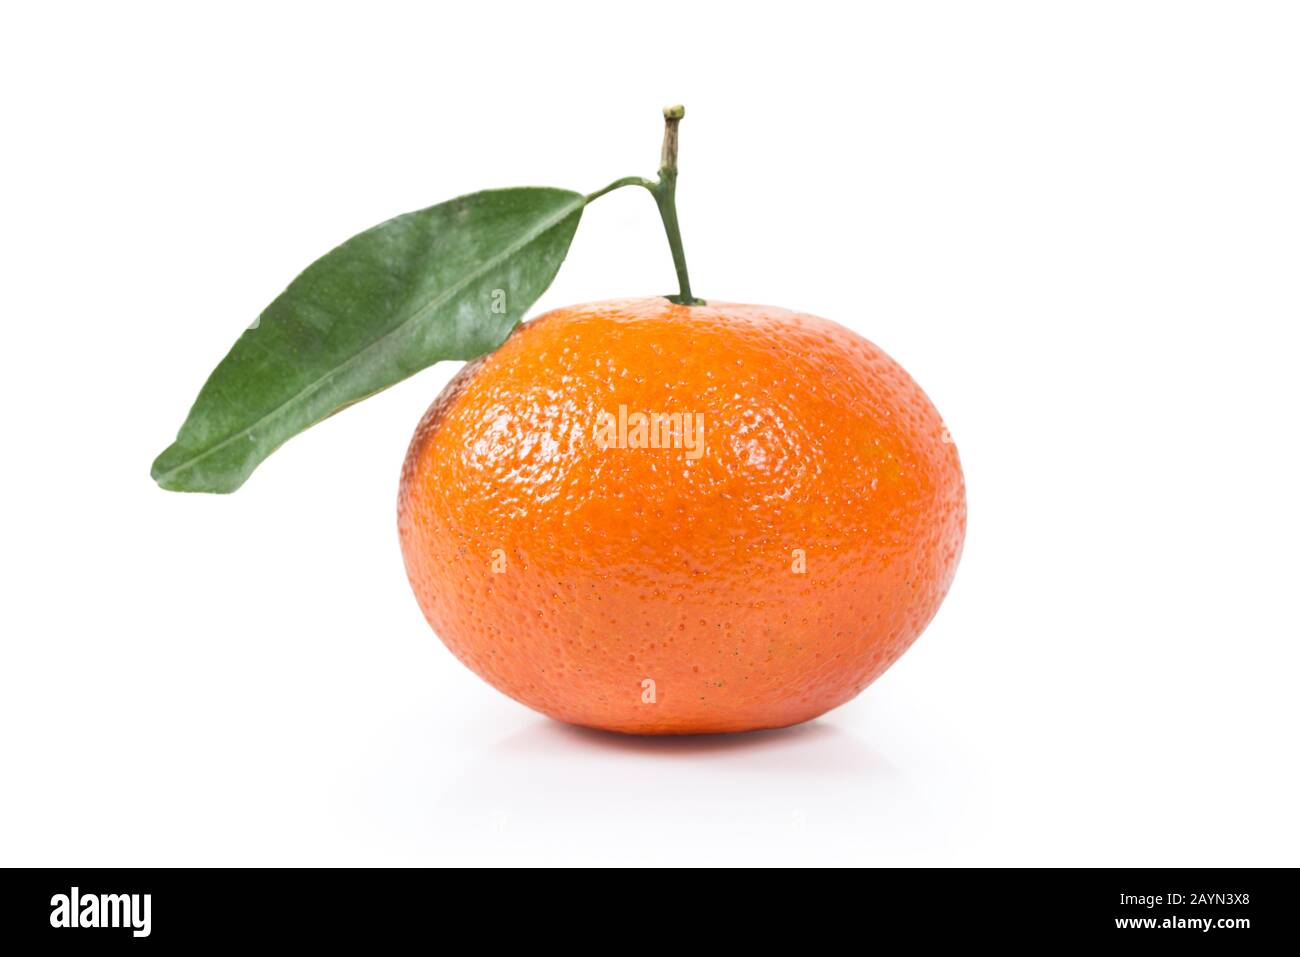 Une seule clémentine de mandarine entière avec une feuille verte isolée sur fond blanc. Chemin de découpe pour une découpe facile Banque D'Images